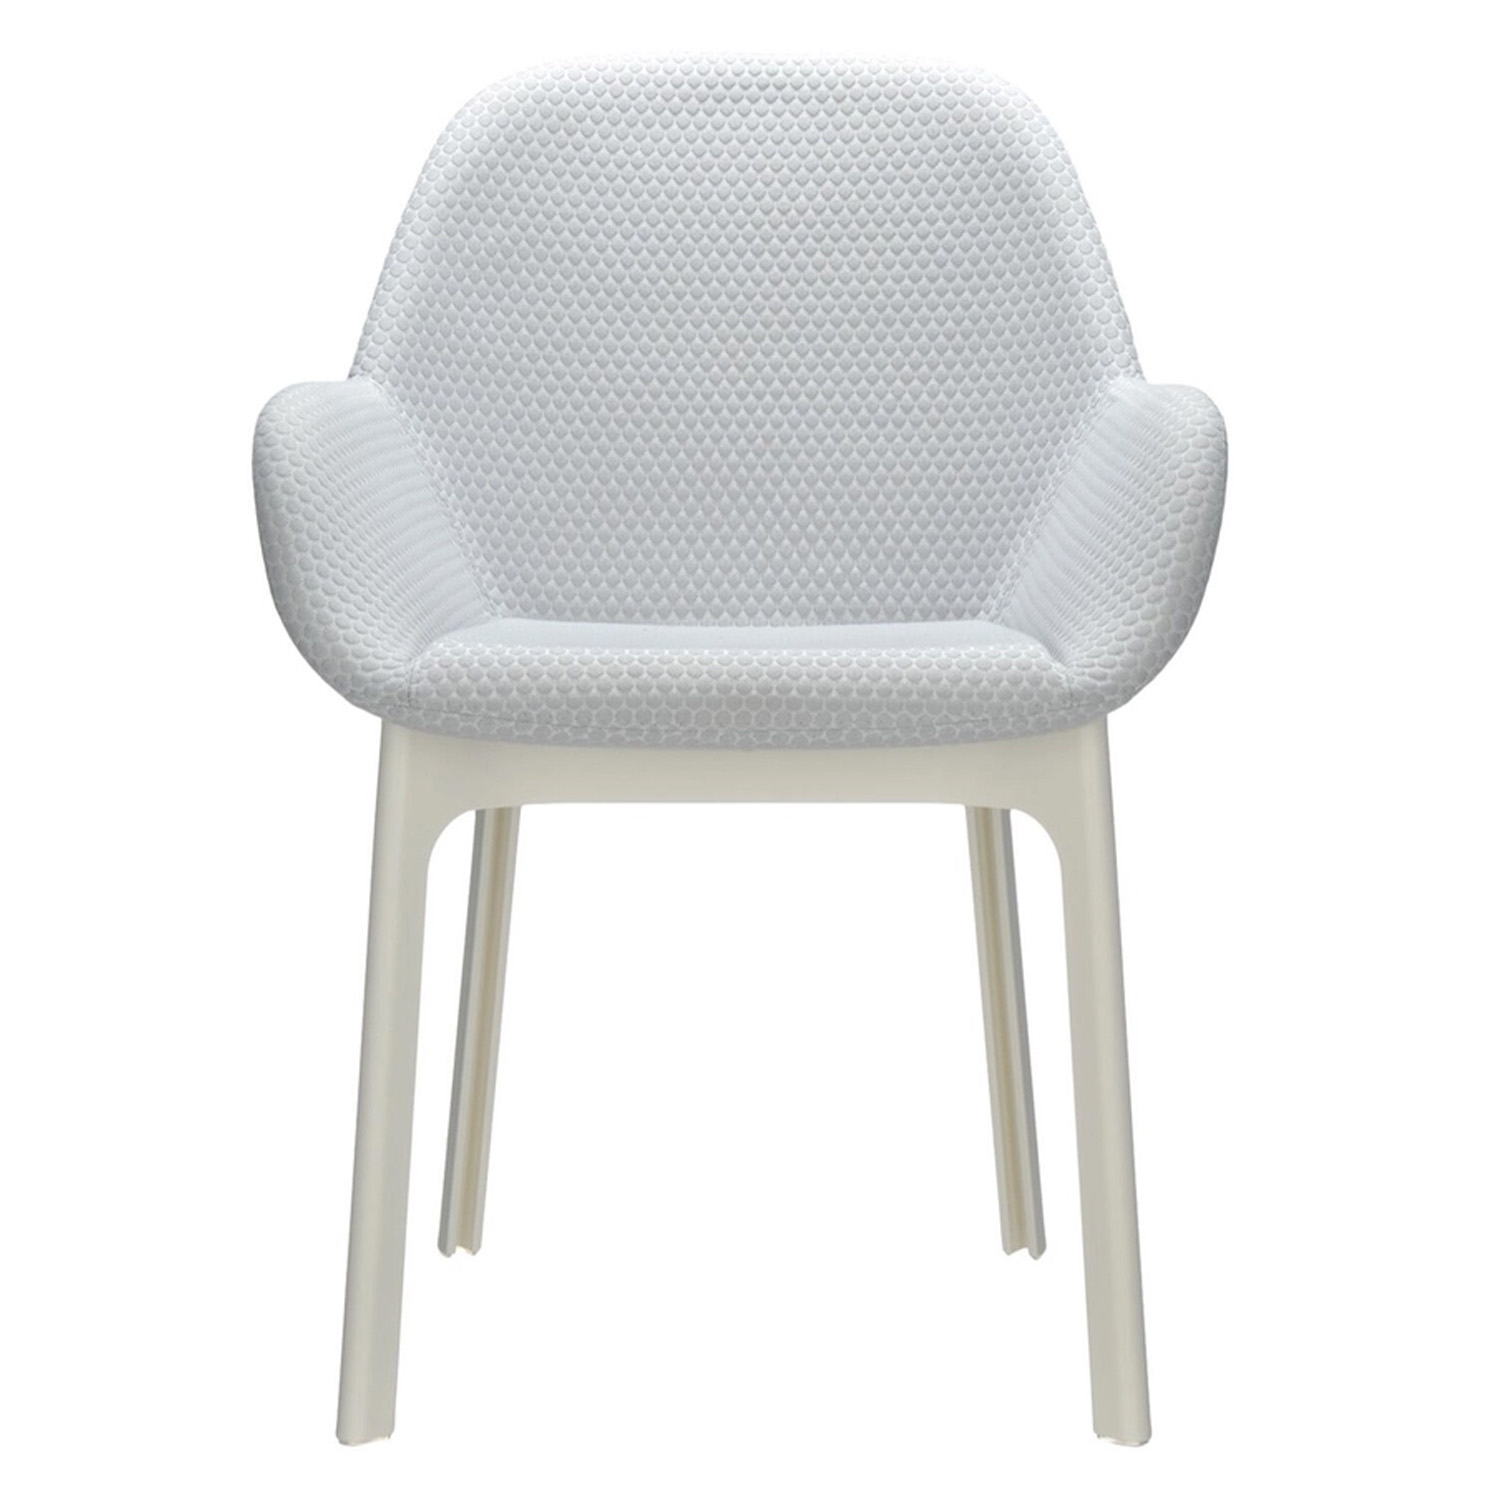 Kartell designové židle Clap Chair